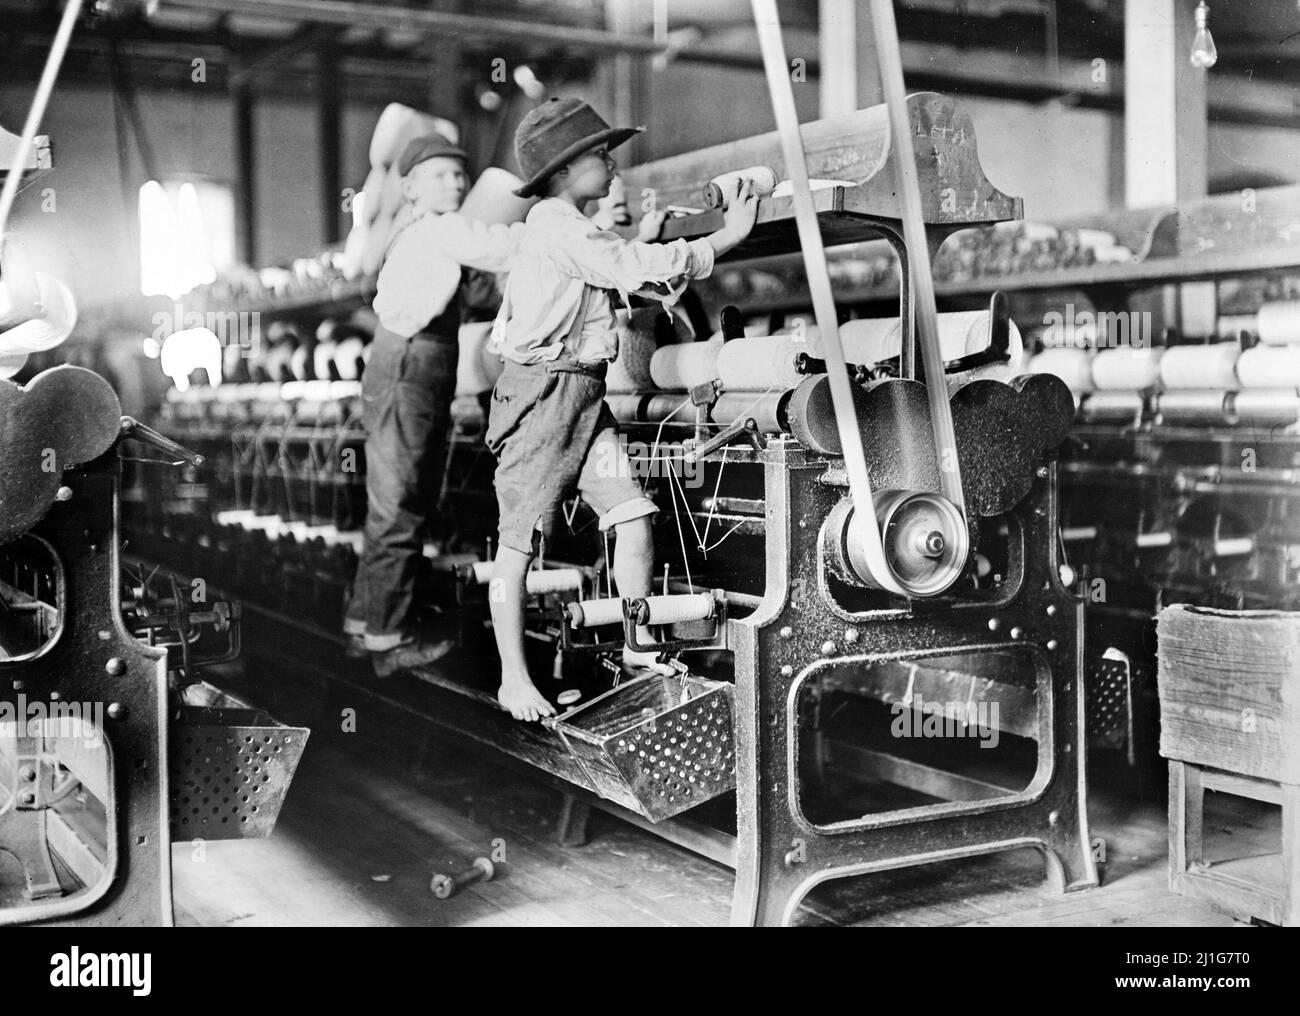 Doffer Boys, Macon, Georgia di Lewis Hine (1874-1940), 1908. La fotografia mostra i ragazzi giovani che lavorano in un mulino di cotone come lavoro infantile Foto Stock